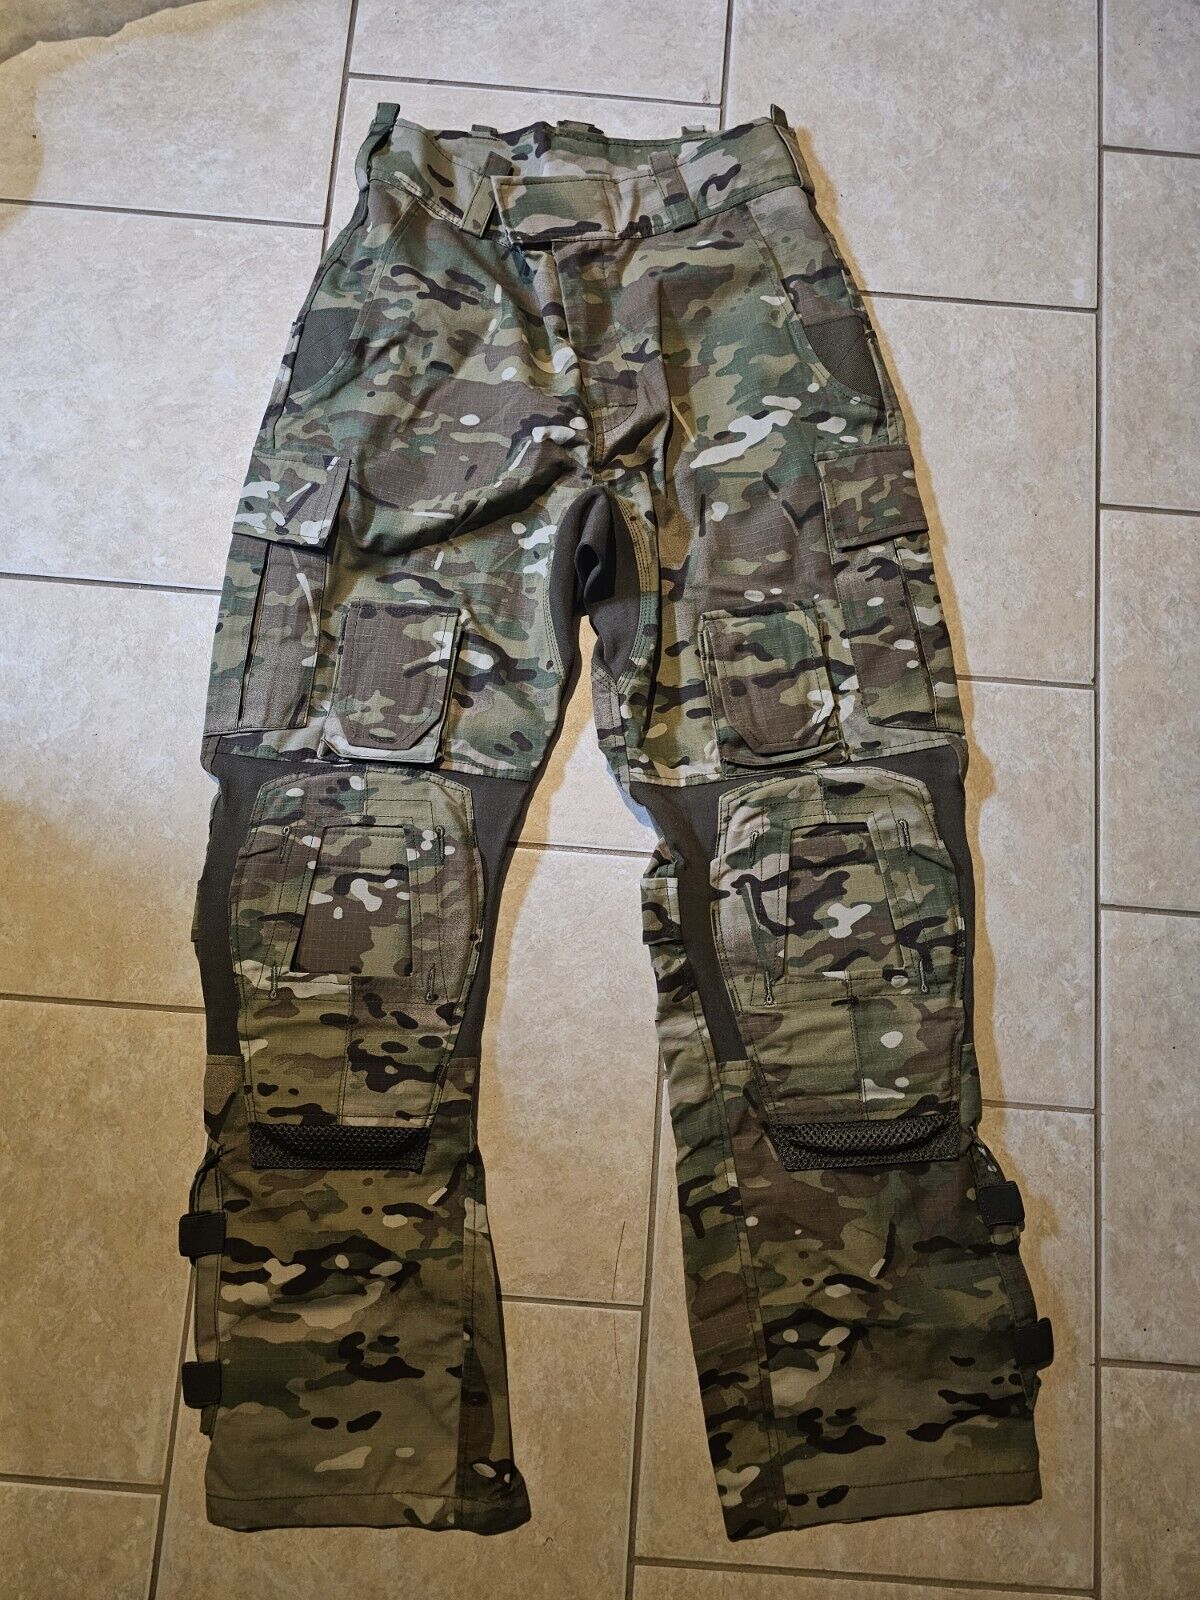 Arktis C222 Ranger Trousers Multicam Combat Pants 32x33 NWOT